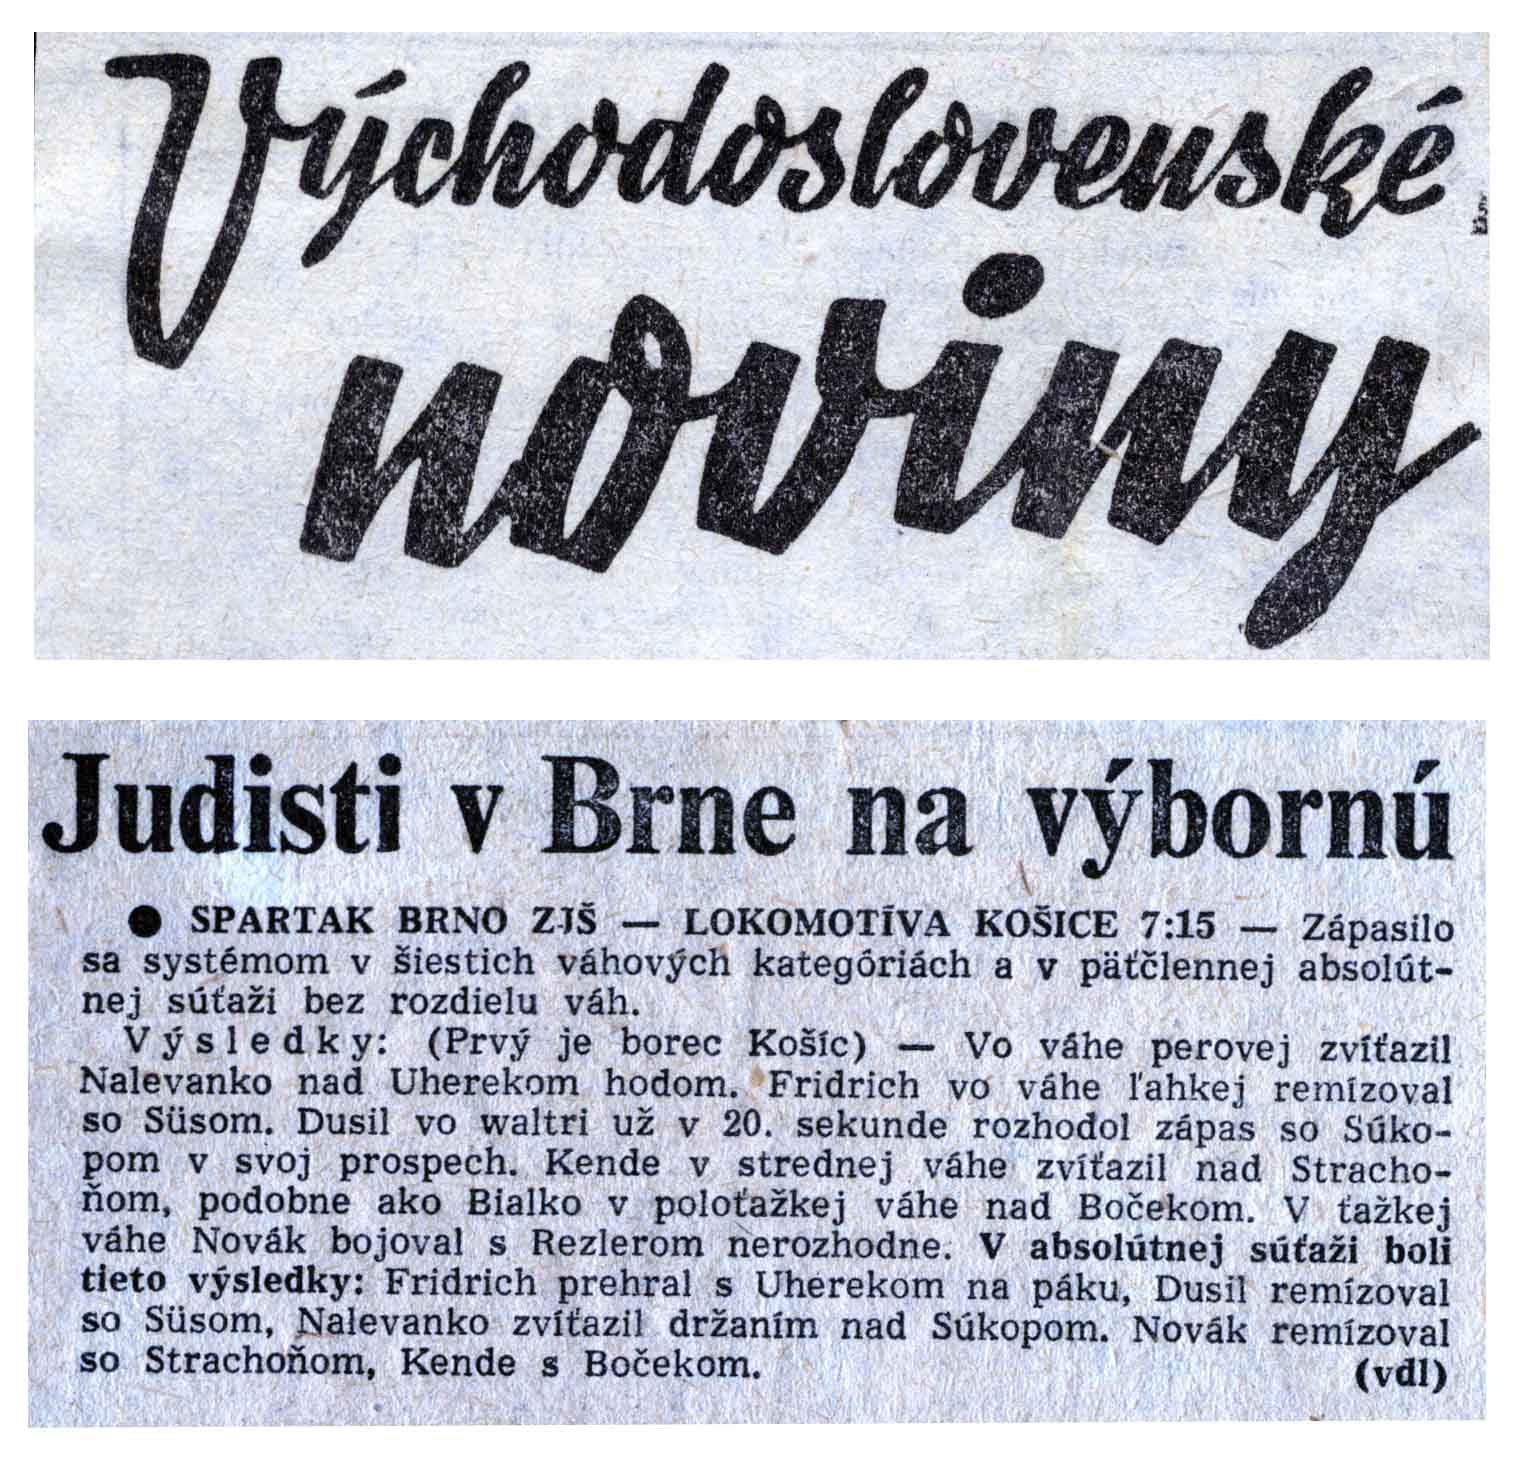 Article - Judisti v Brne na výbornú